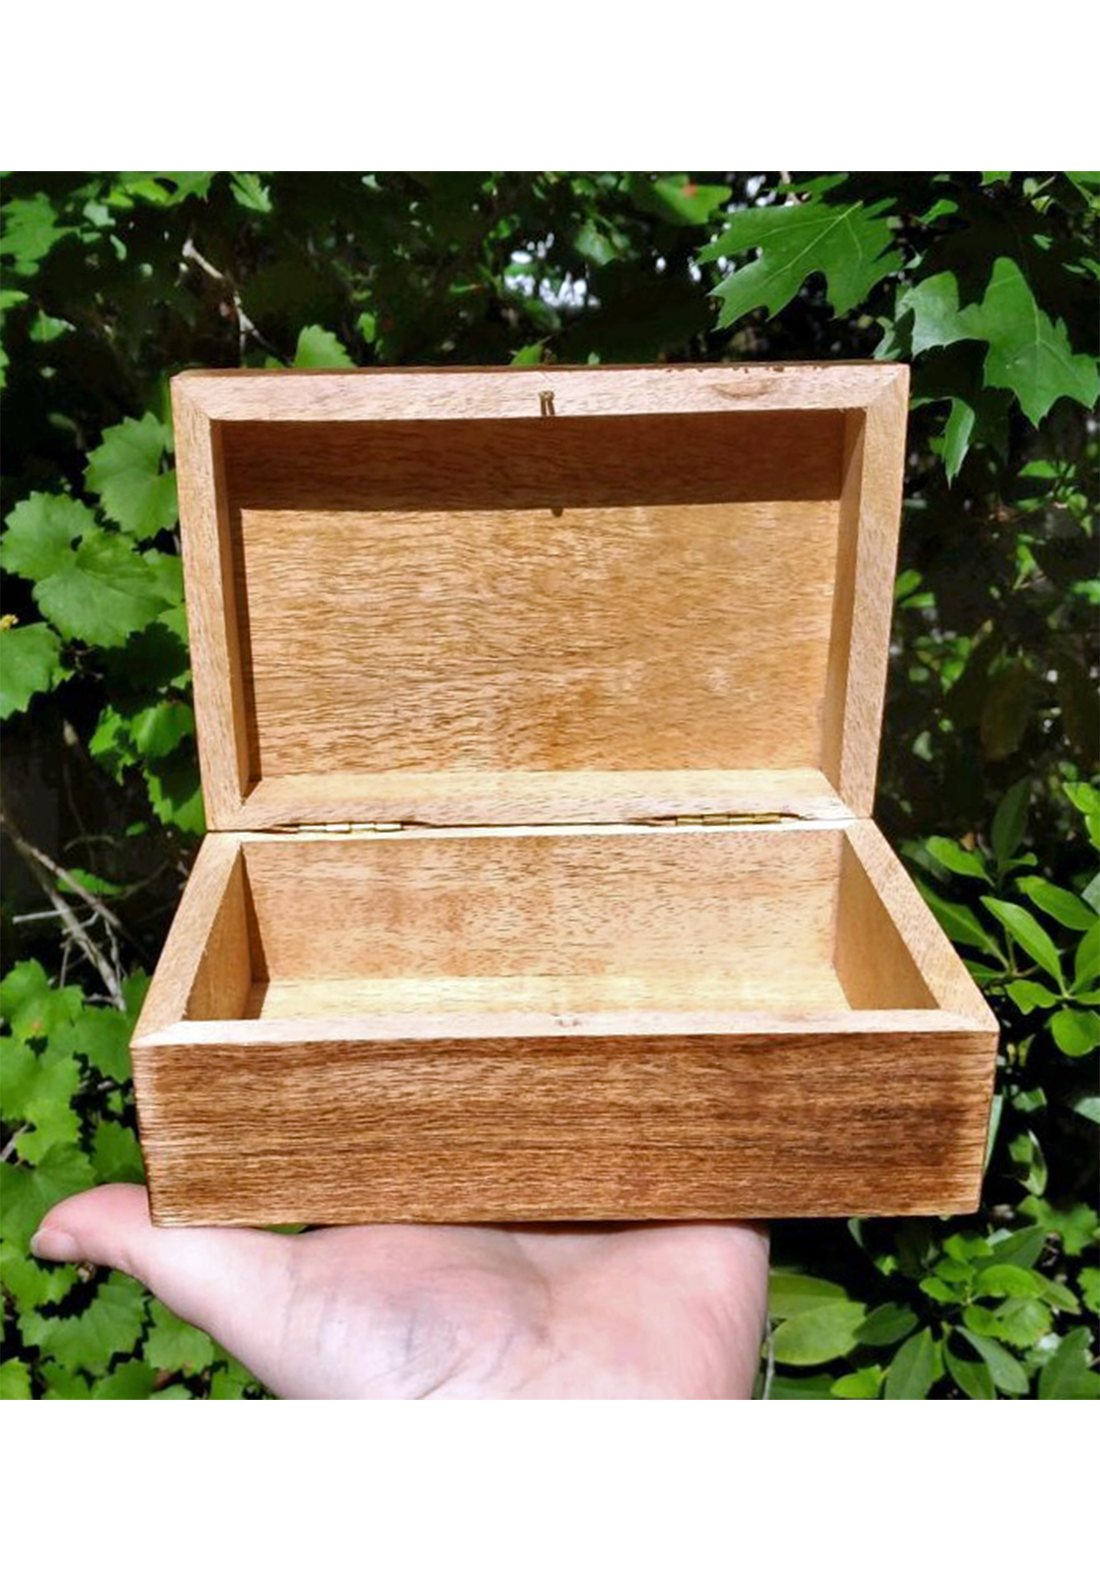 Unembellished Wood Storage Chest Box